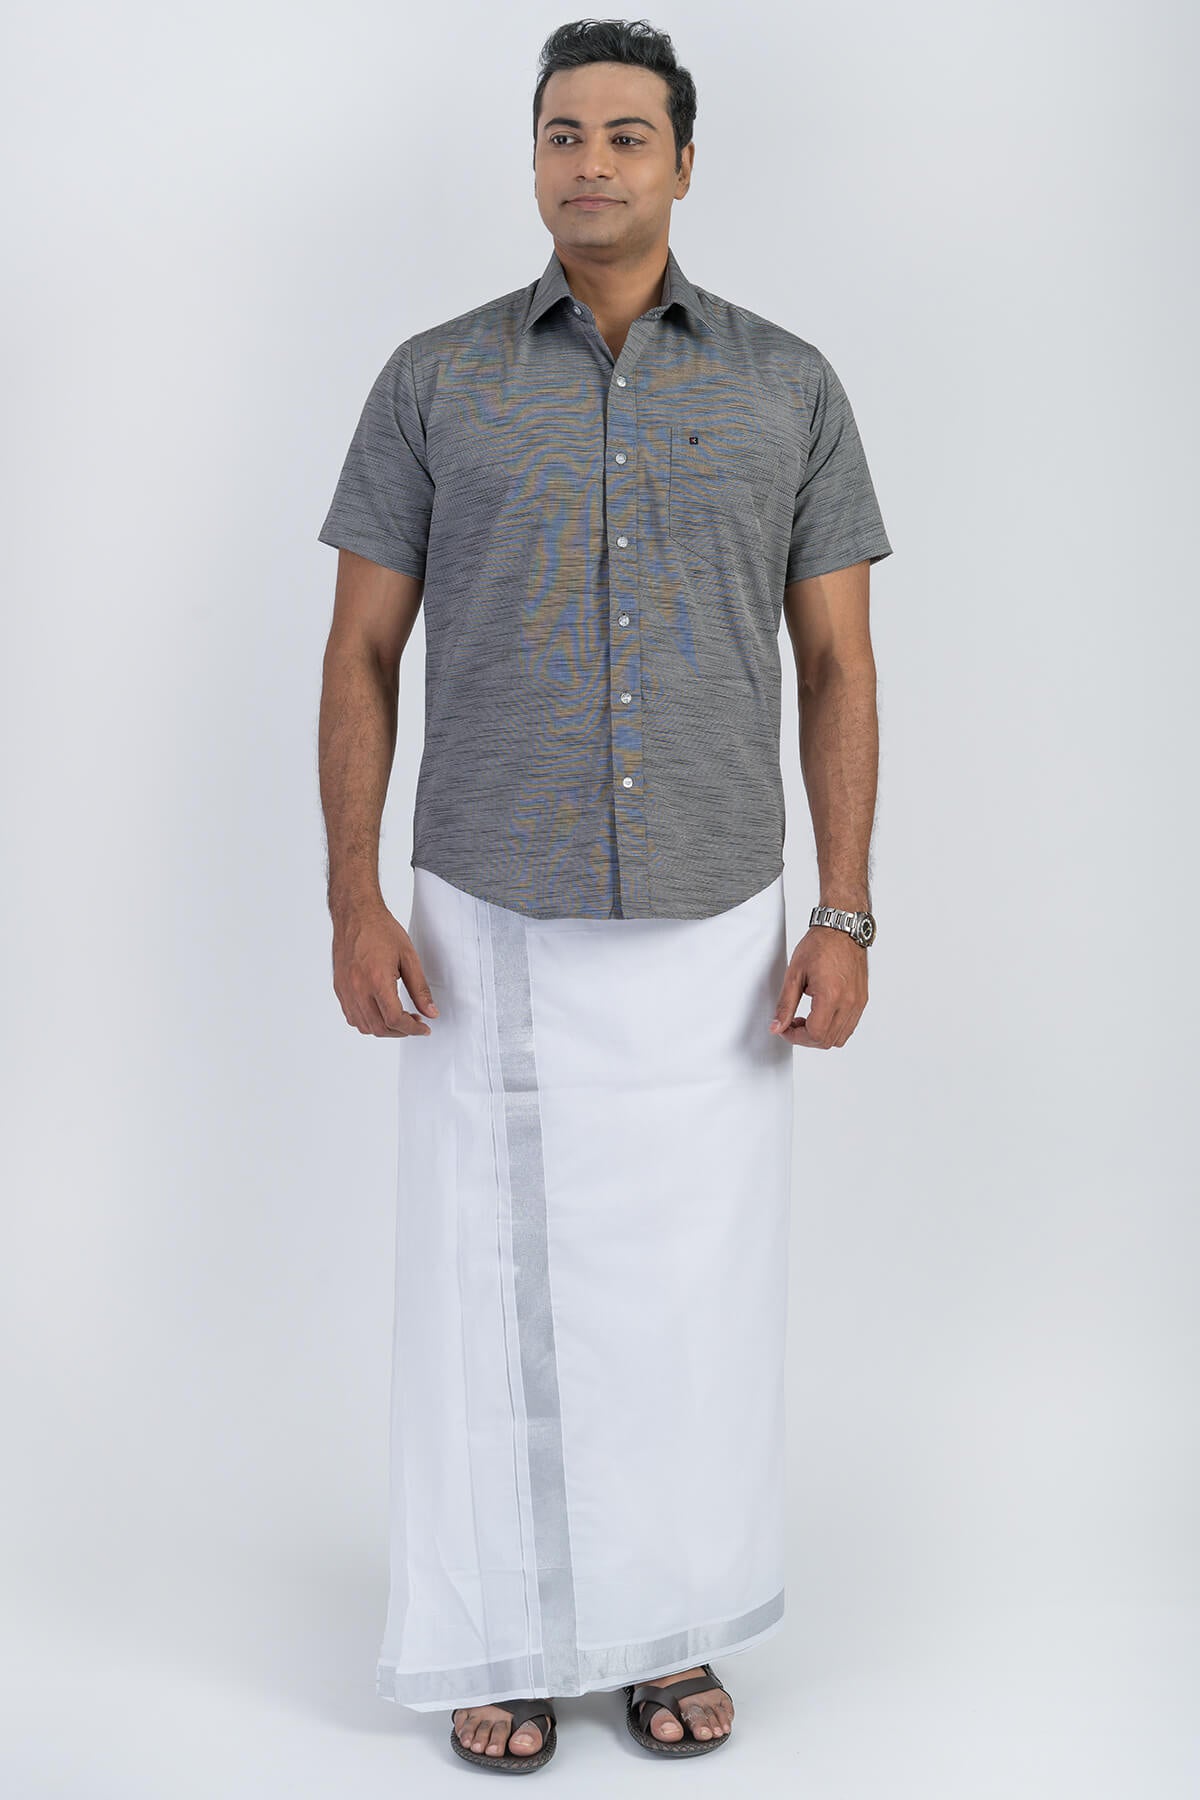 Men's Premium Cotton Dhoti with Silver Elegant Border